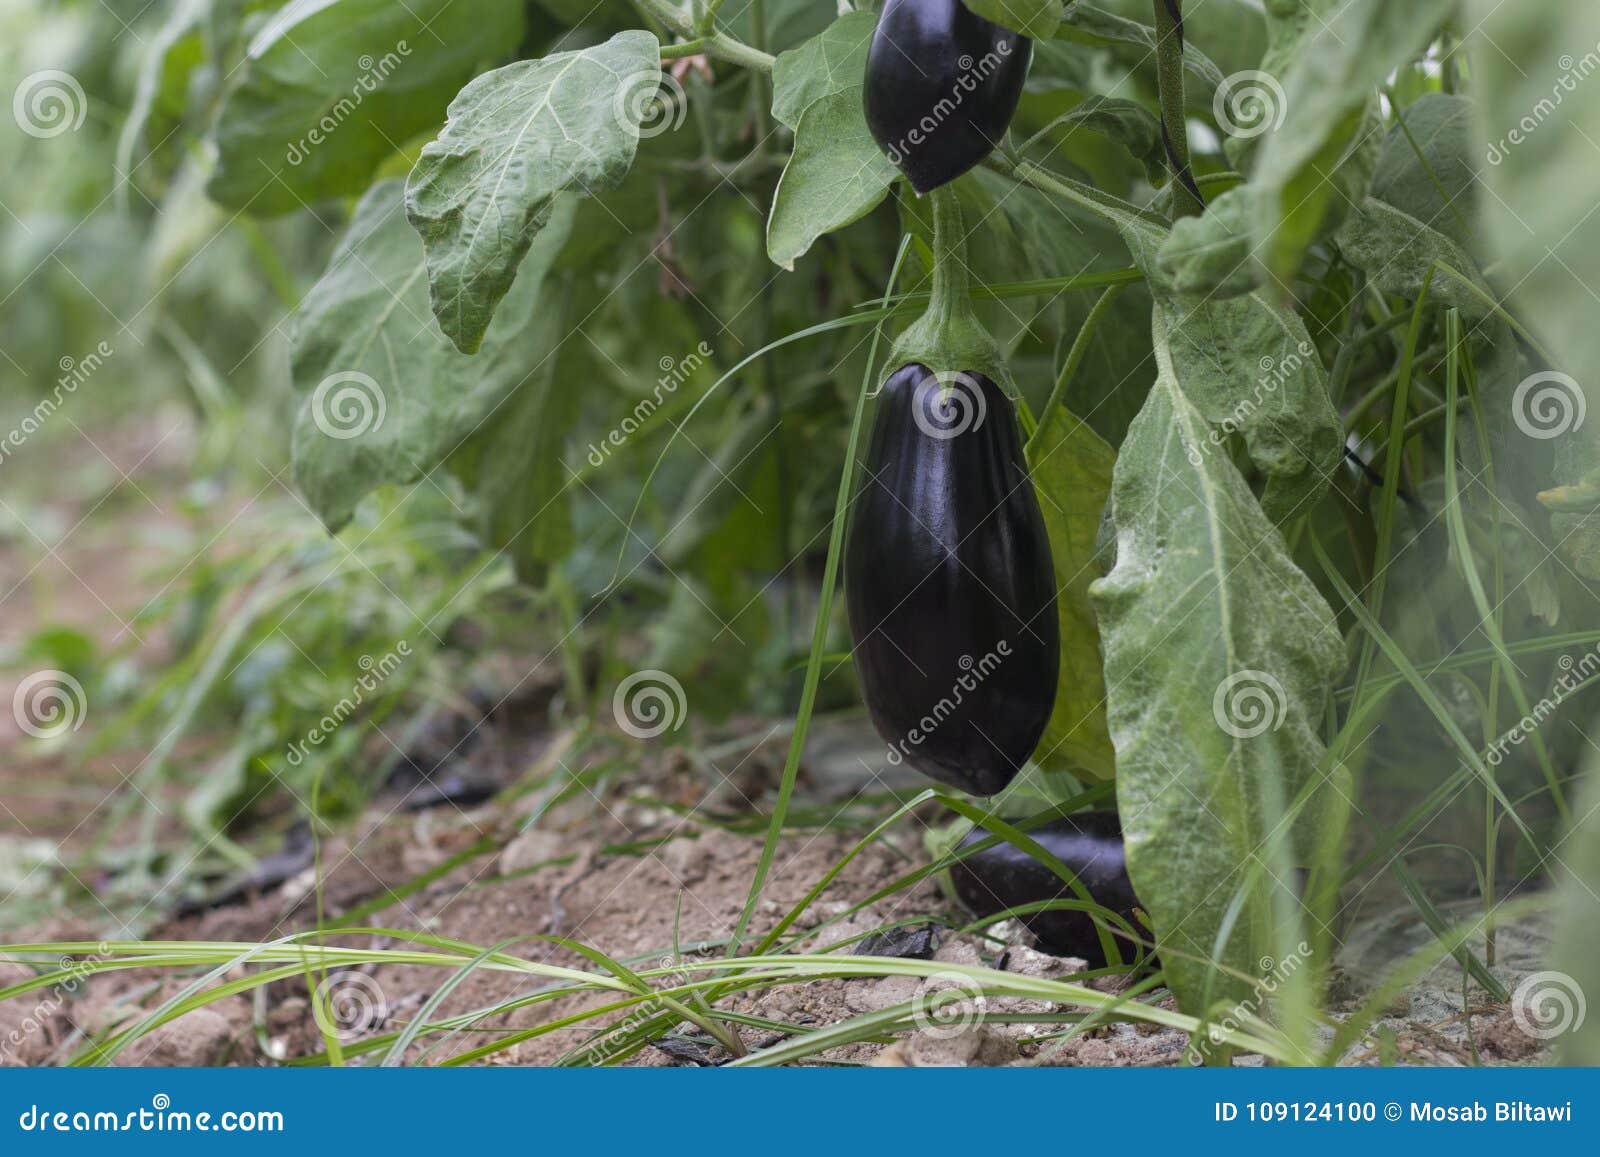 eggplant jordans